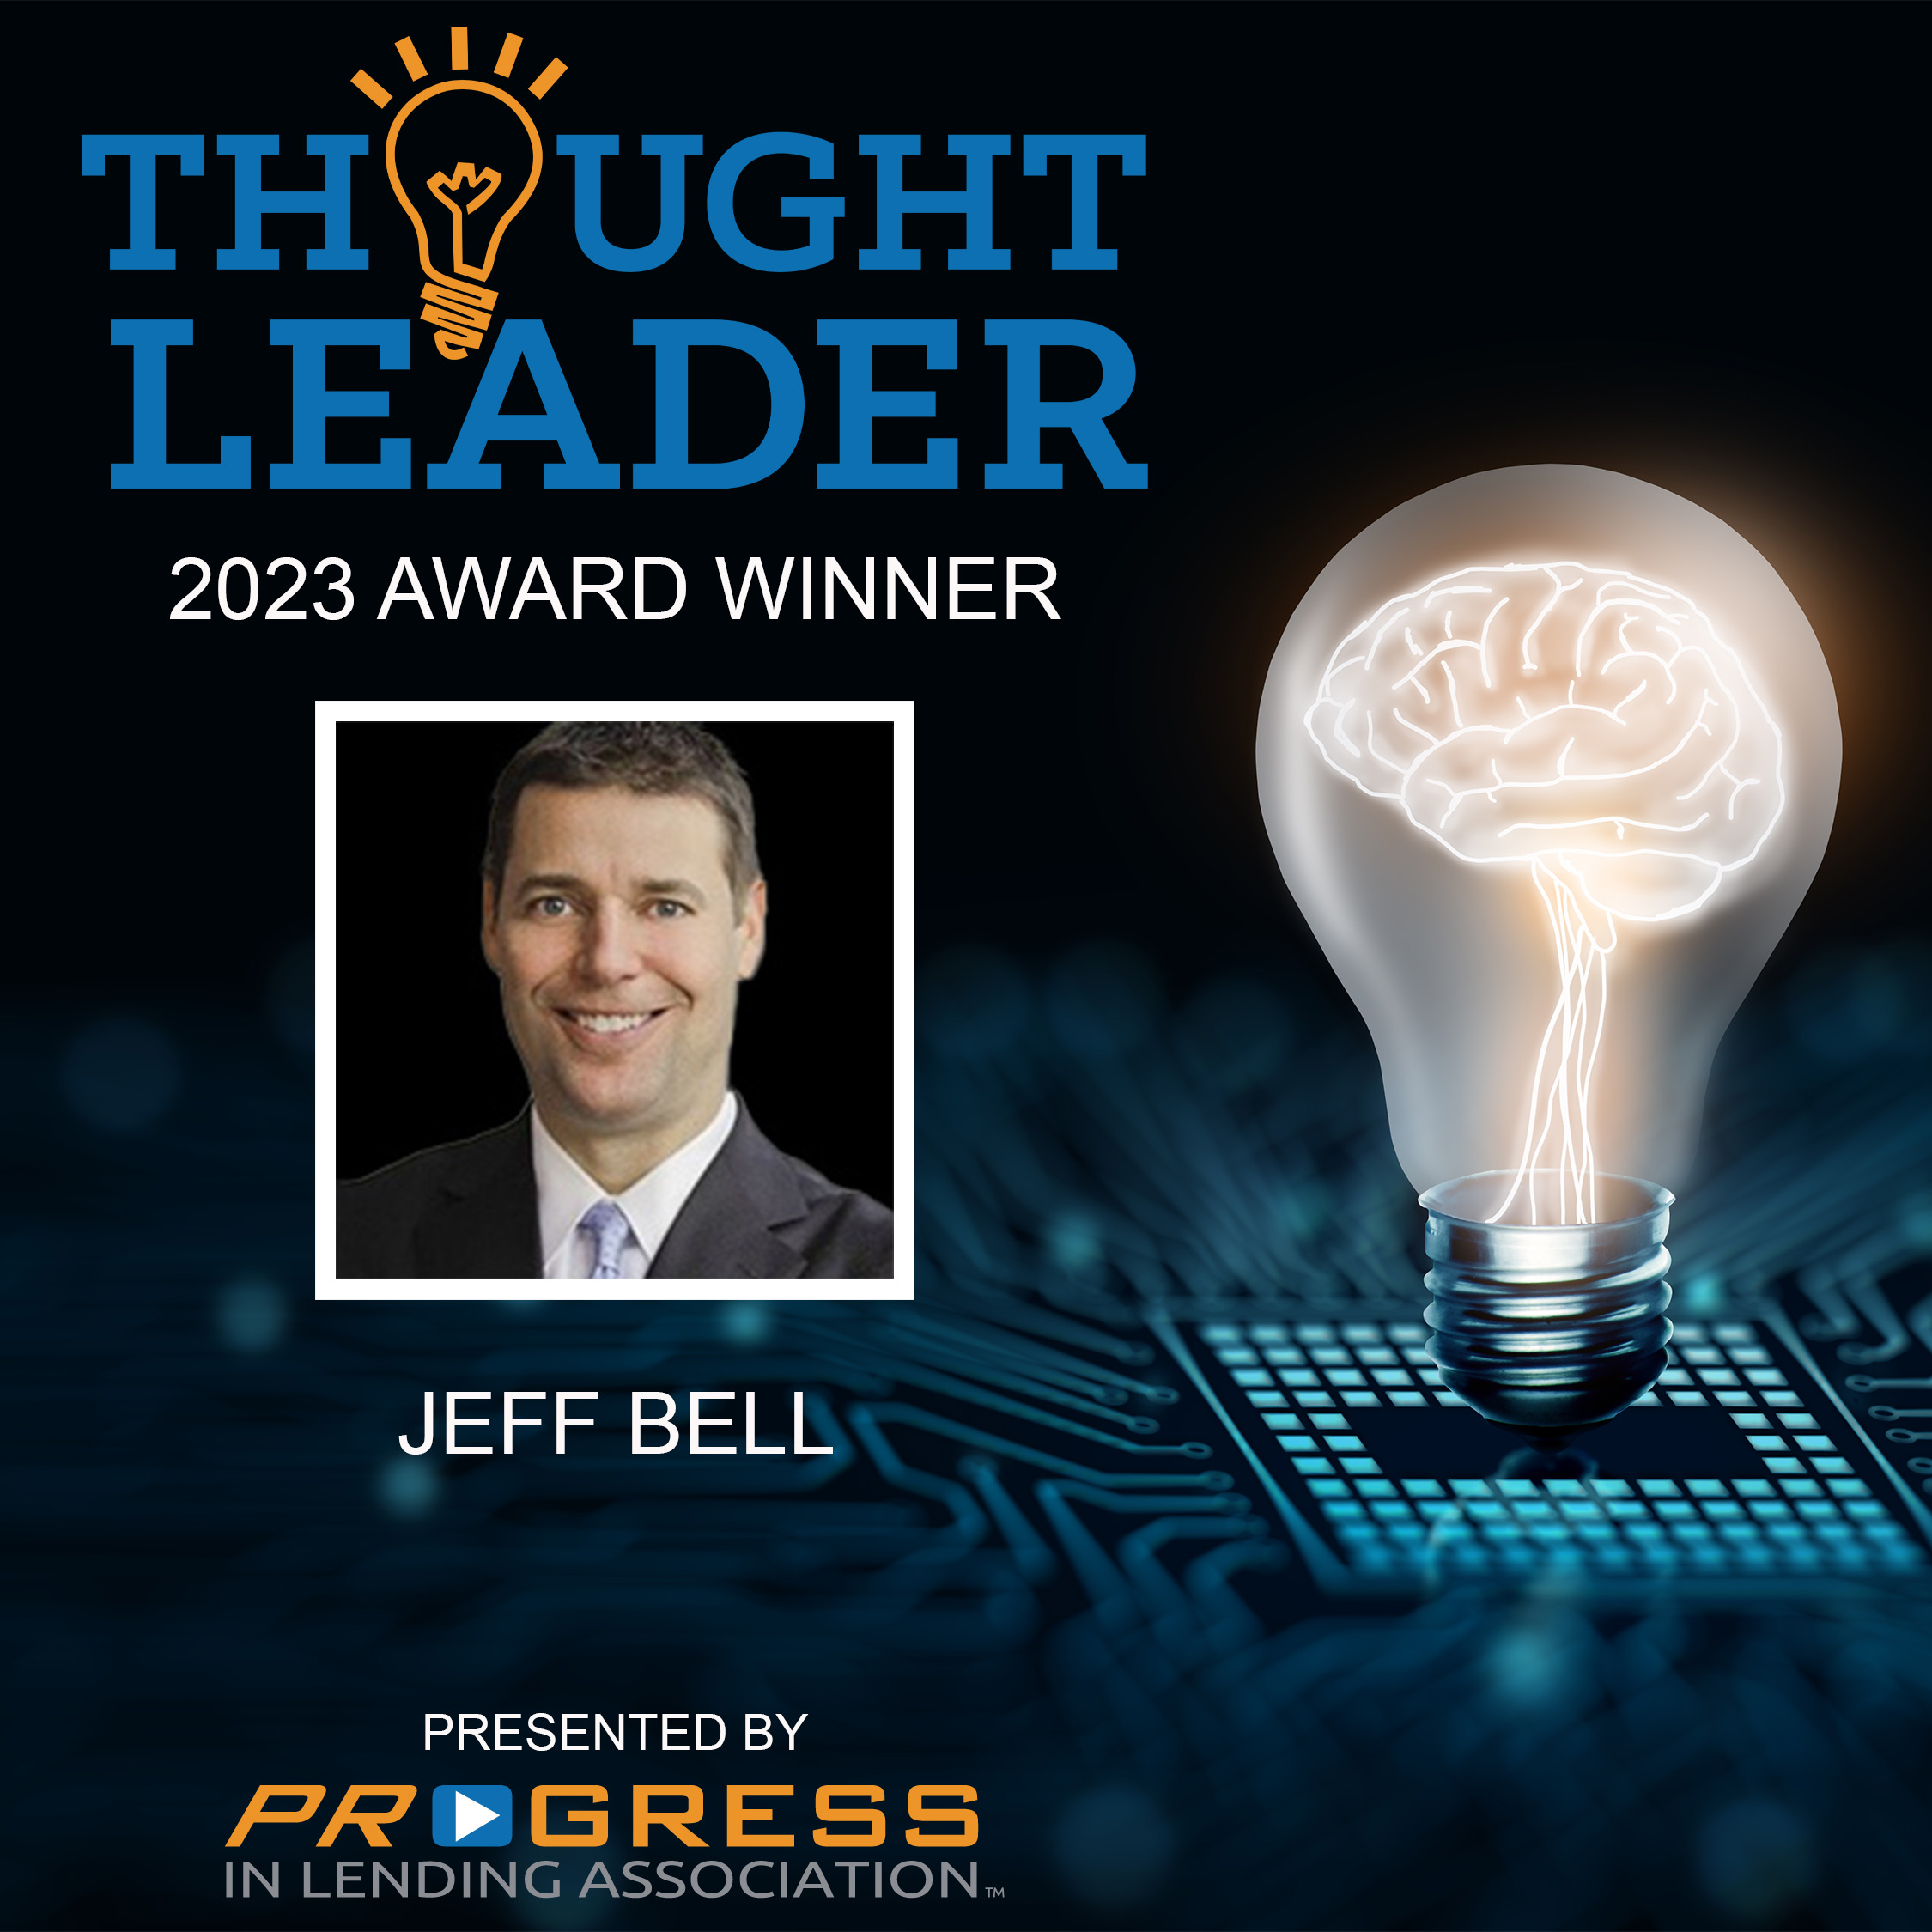 Jeff Bell Named 2023 Thought Leader Award Winner